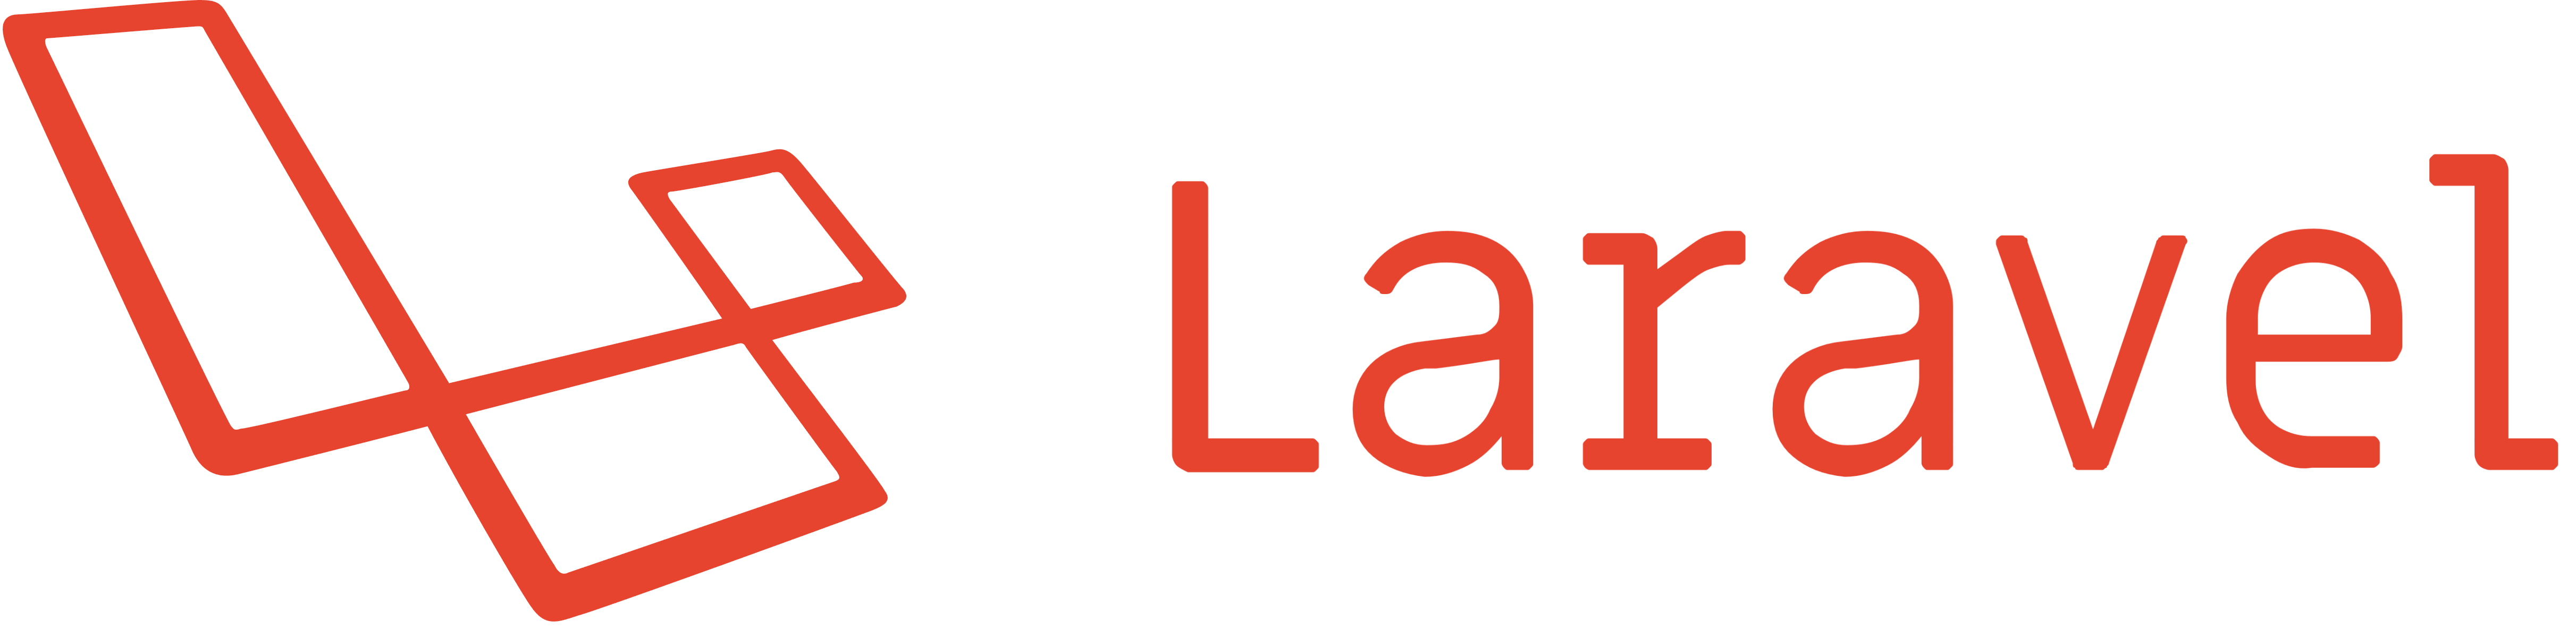 Laravel Logo Icon Free Downlo